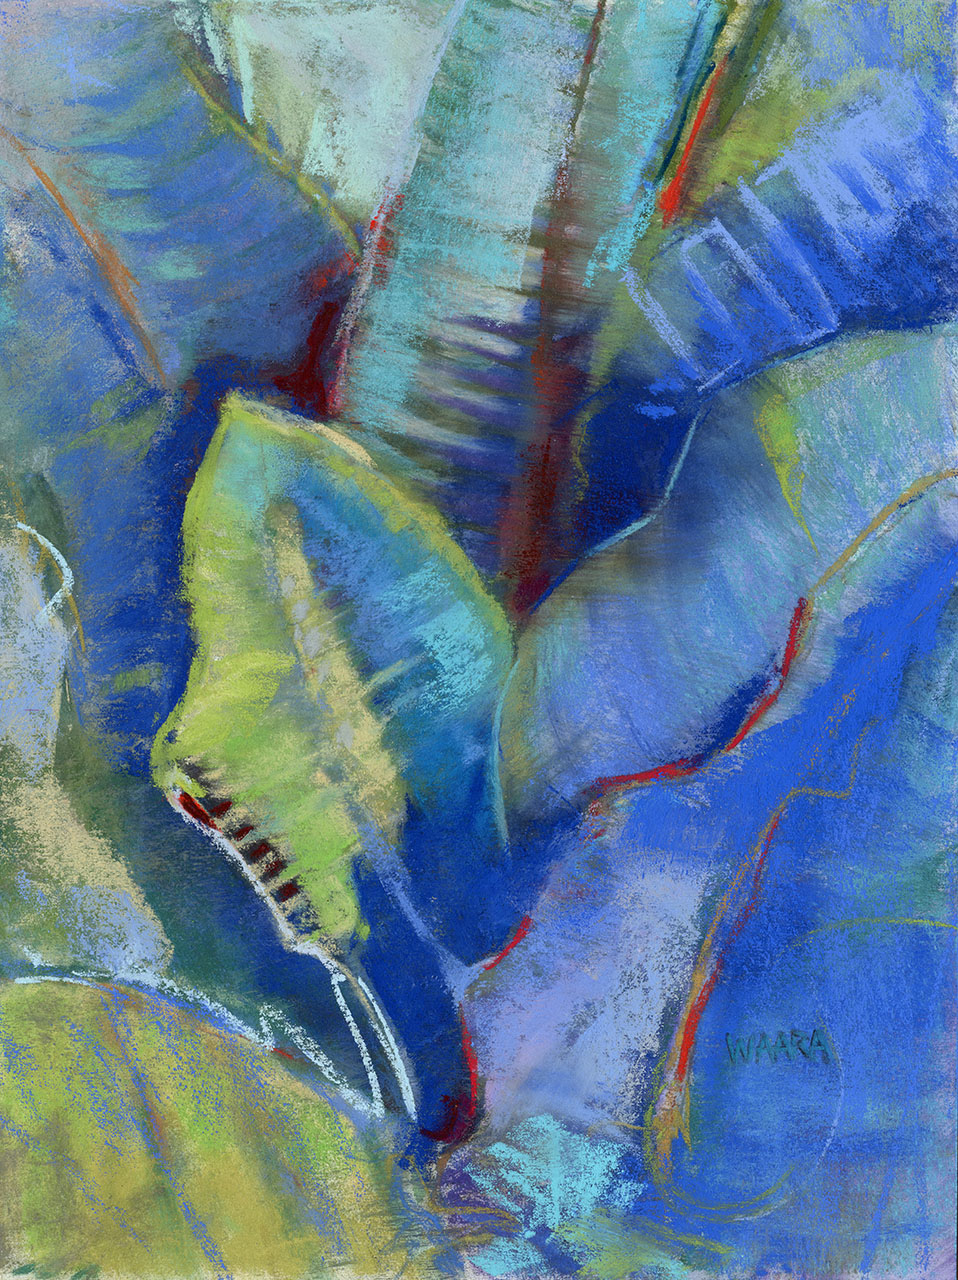 "Leaf Impressions" original pastel painting by Maui artist Christine Waara